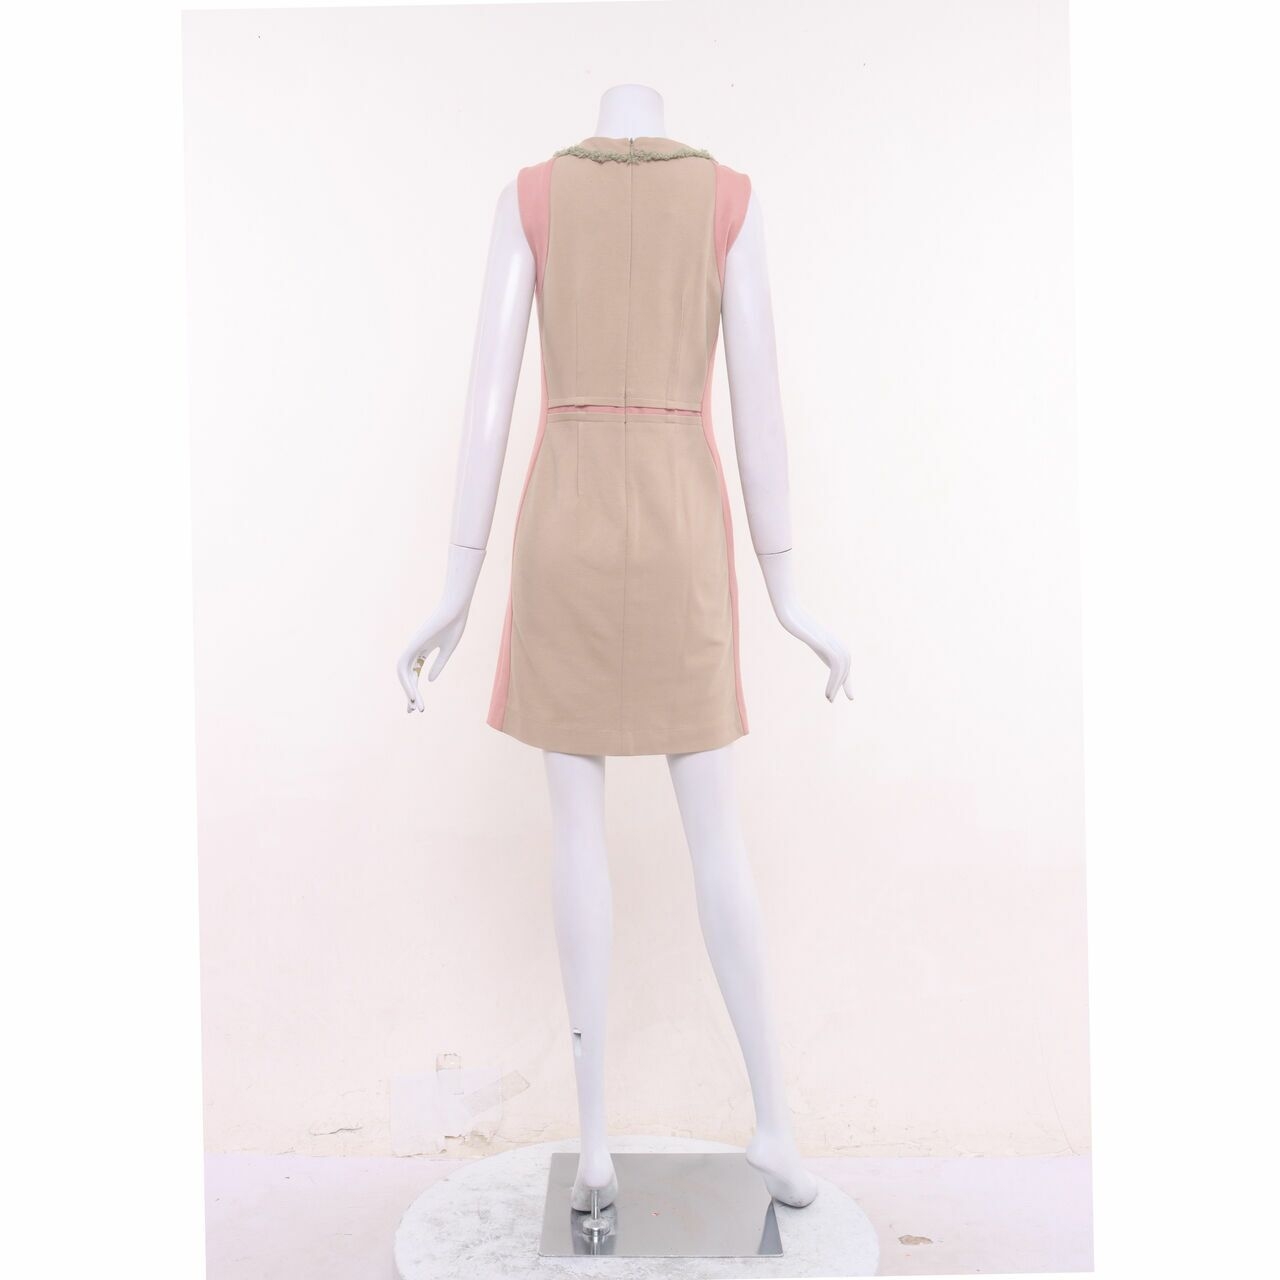 Hanii Y Pink & Nude Mini Dress